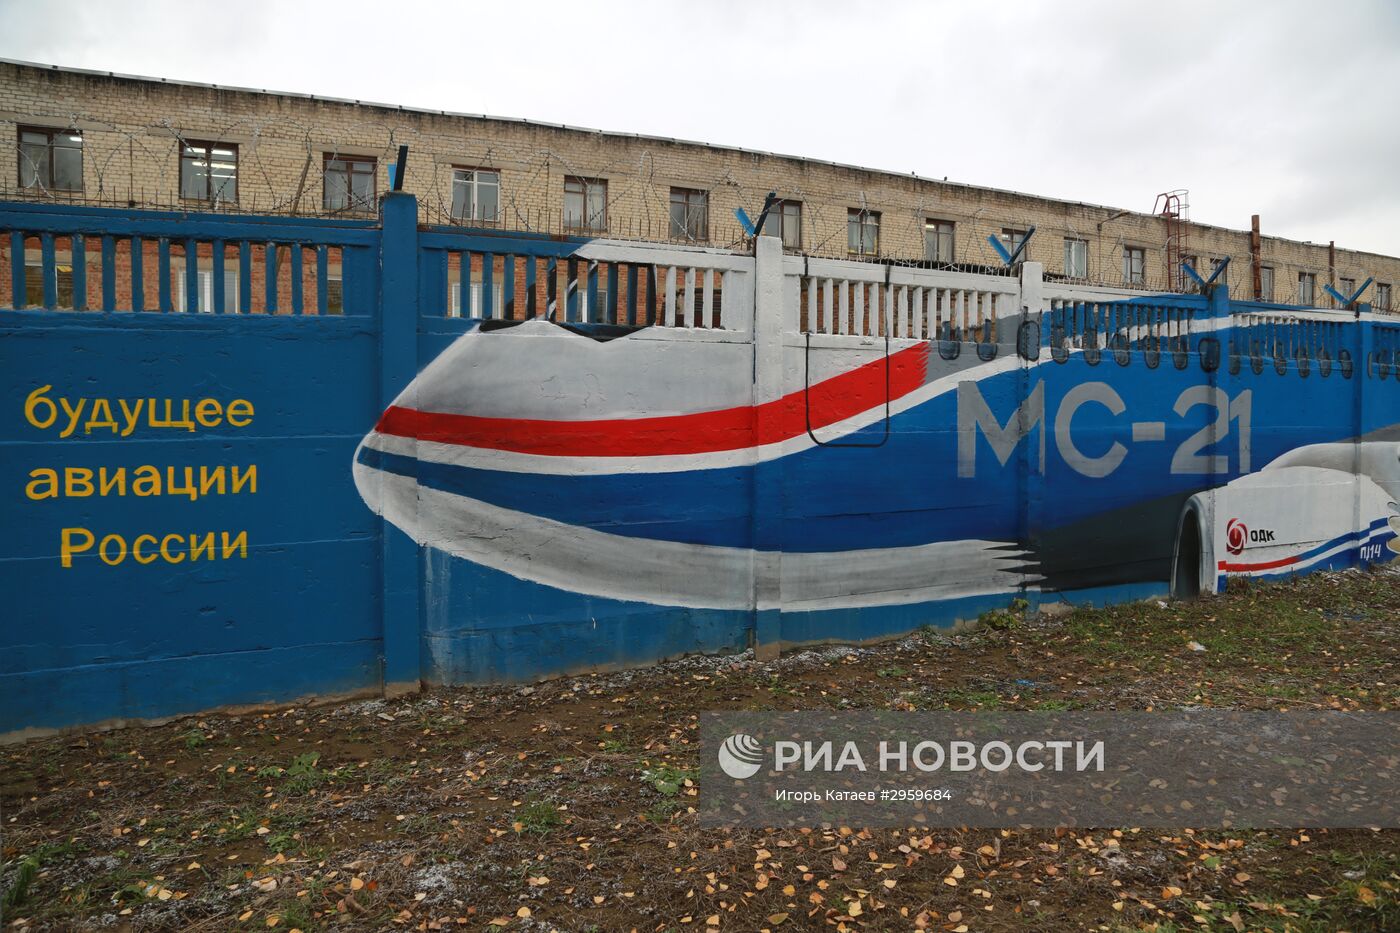 Граффити об истории российской авиации в Перми